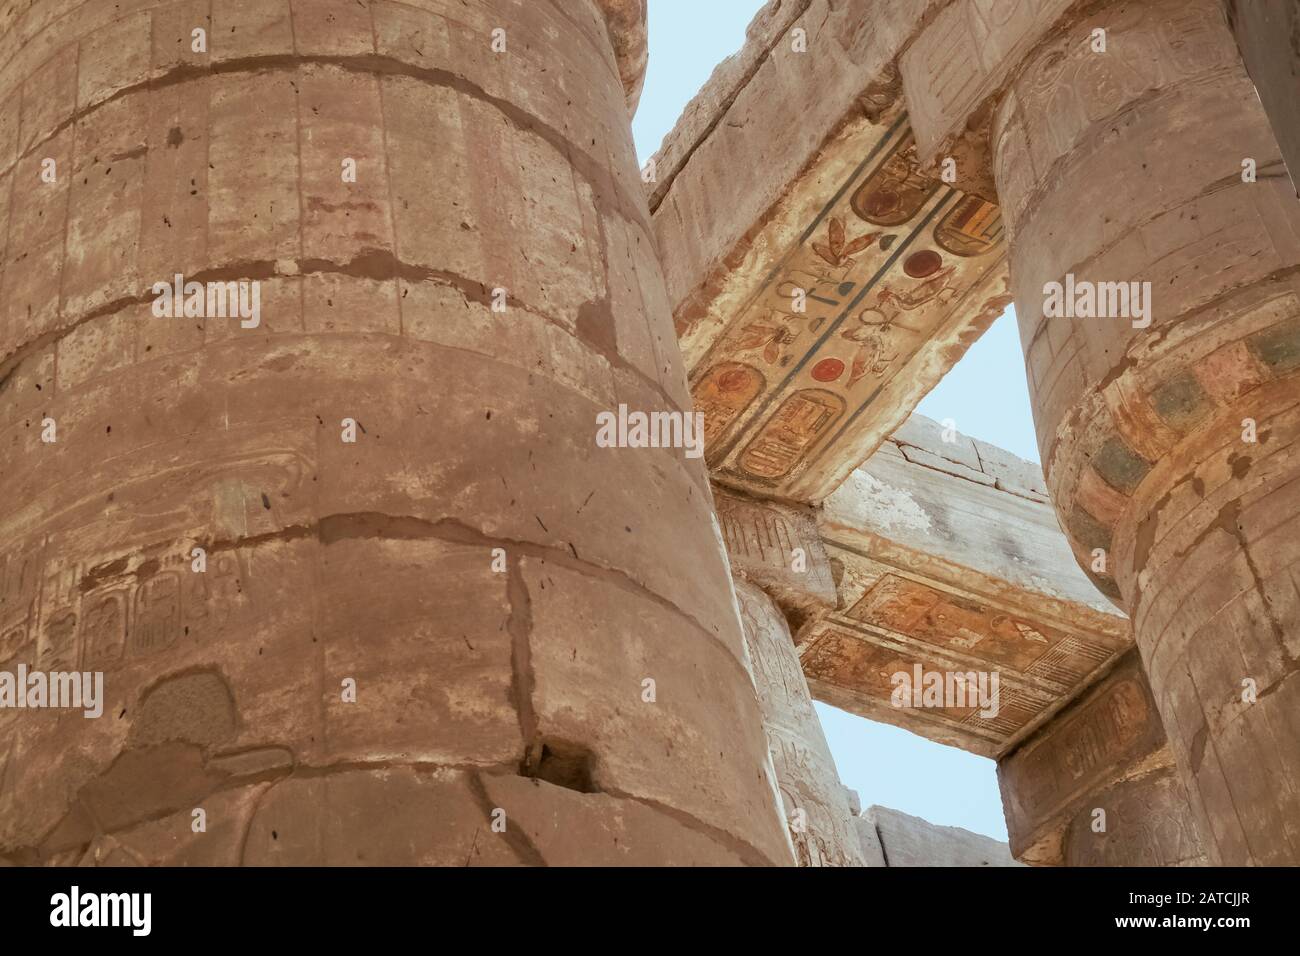 Luxor, Karnak, Egipto, África. Templo de Karnak. Buscando. Jeroglíficos de relieve pintados y tallados. Foto de stock